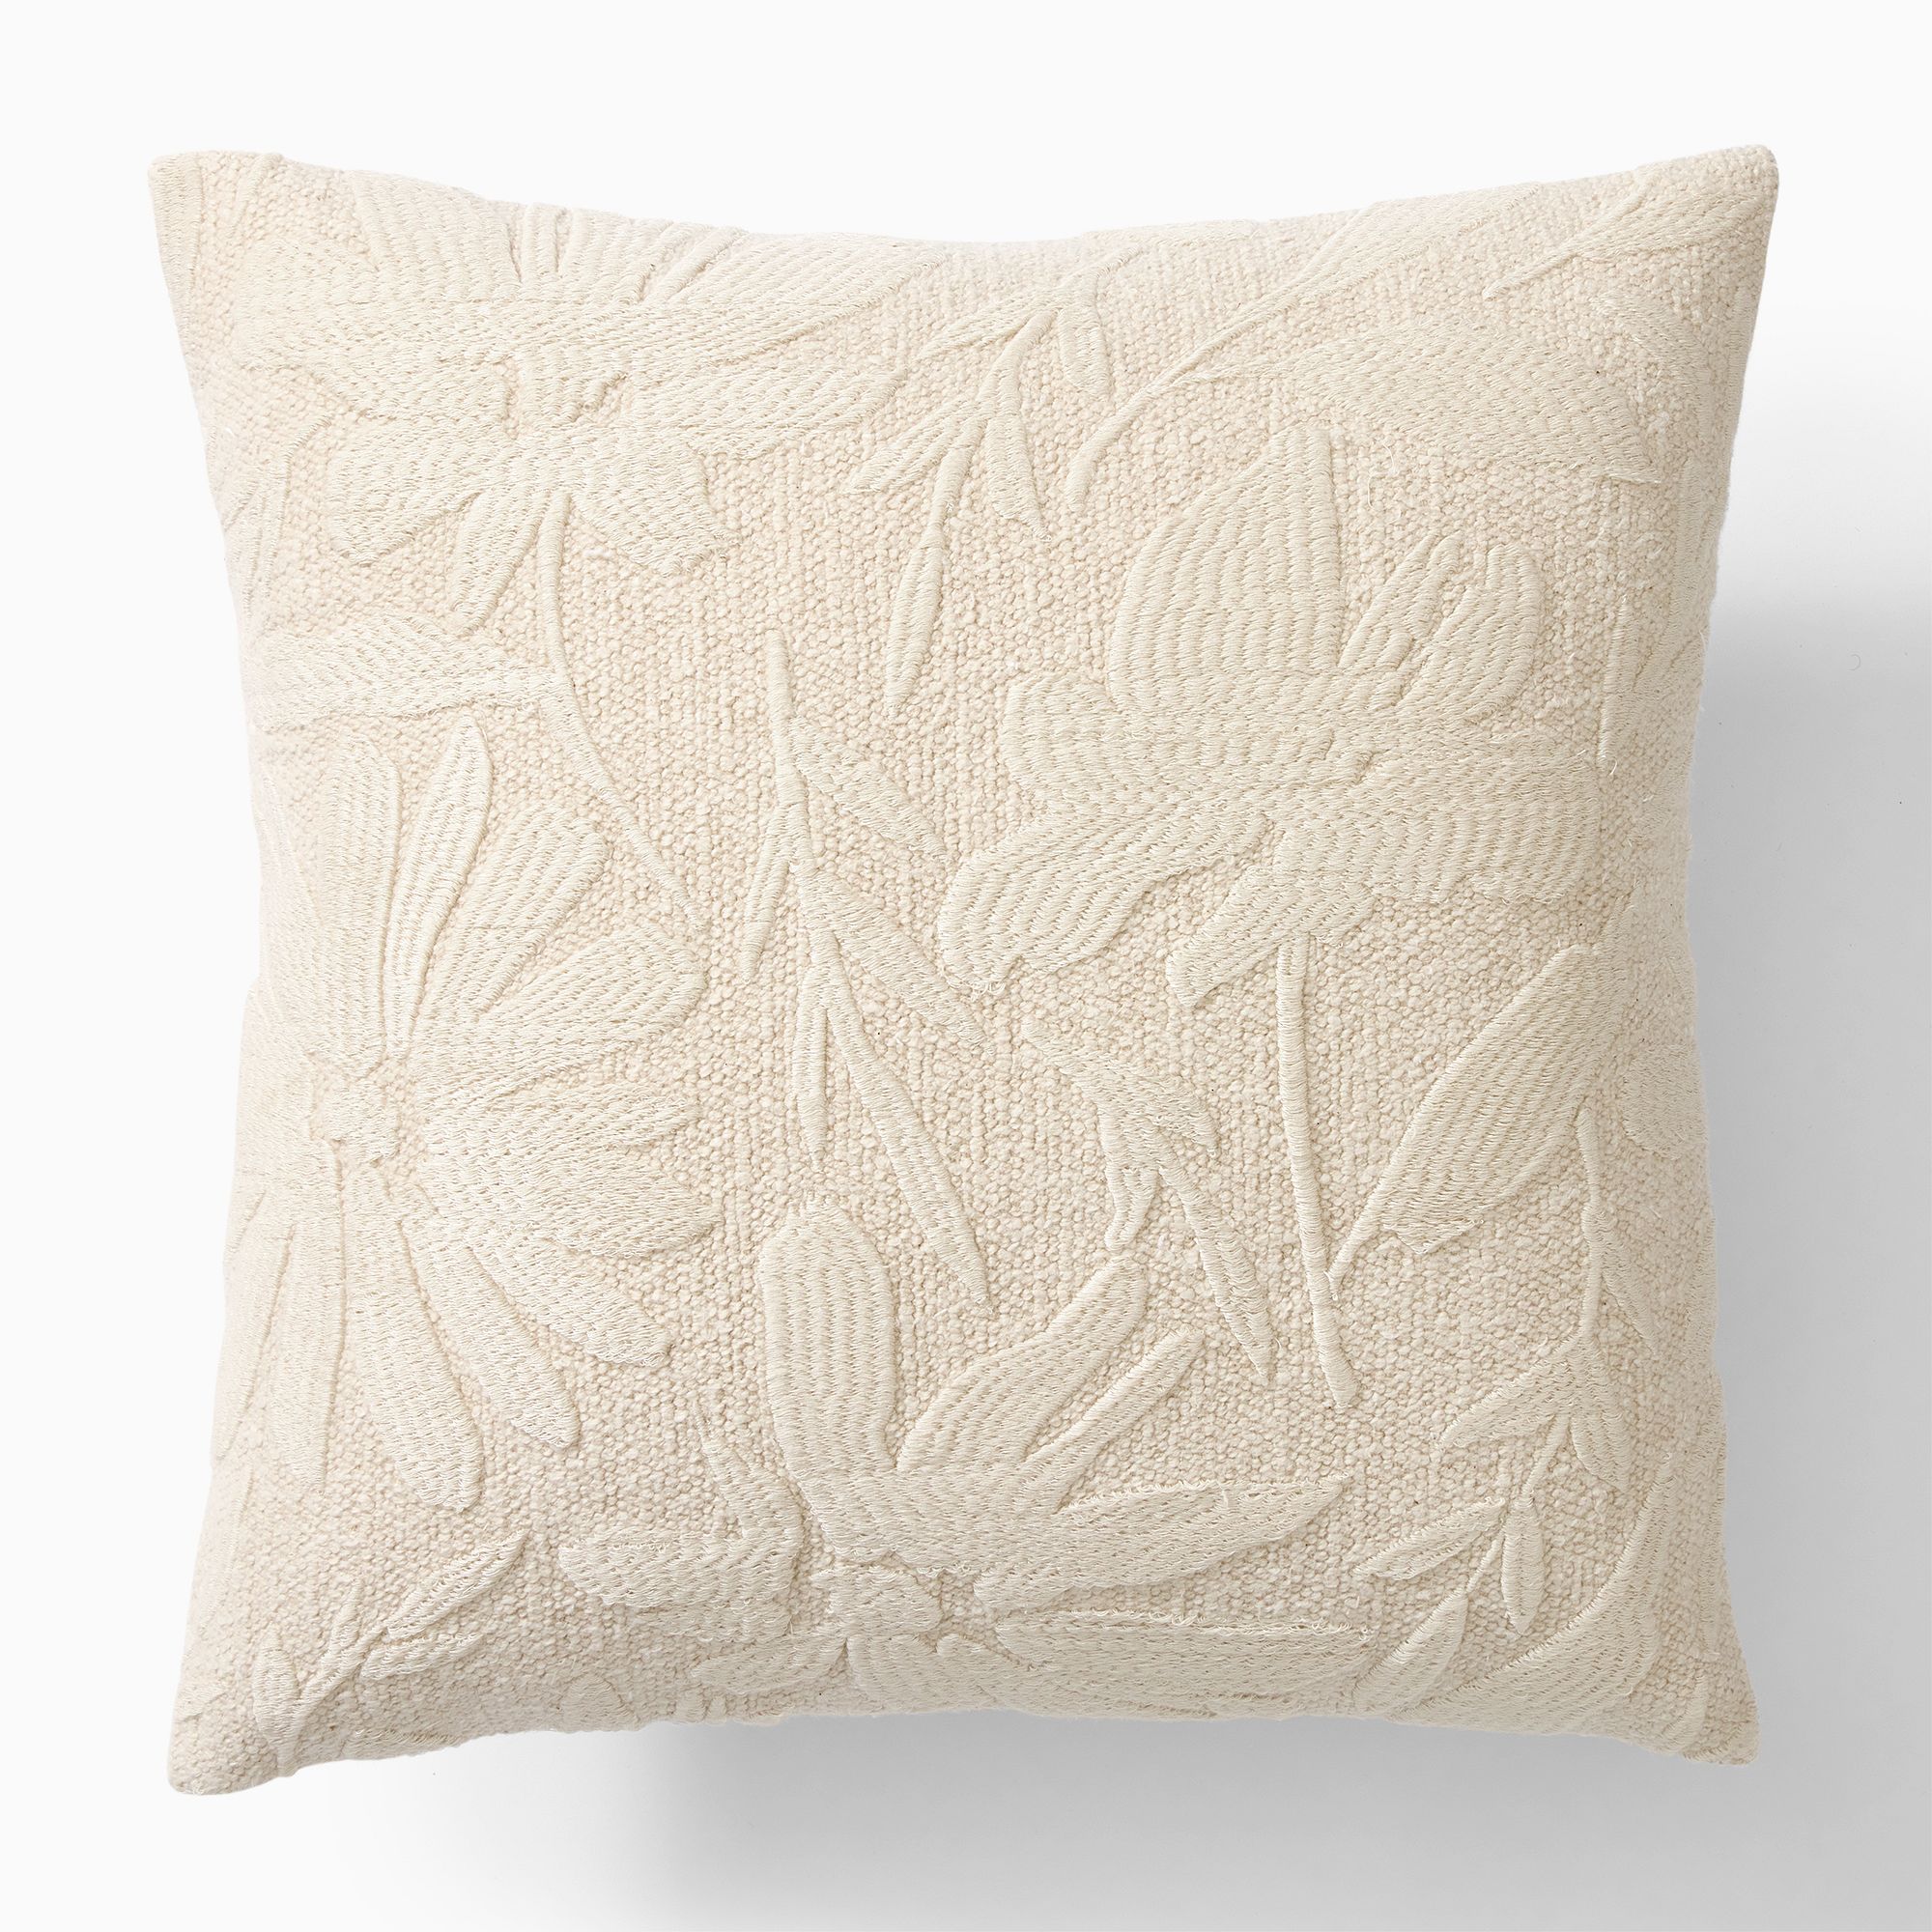 Textural Floral Pillow Cover | West Elm